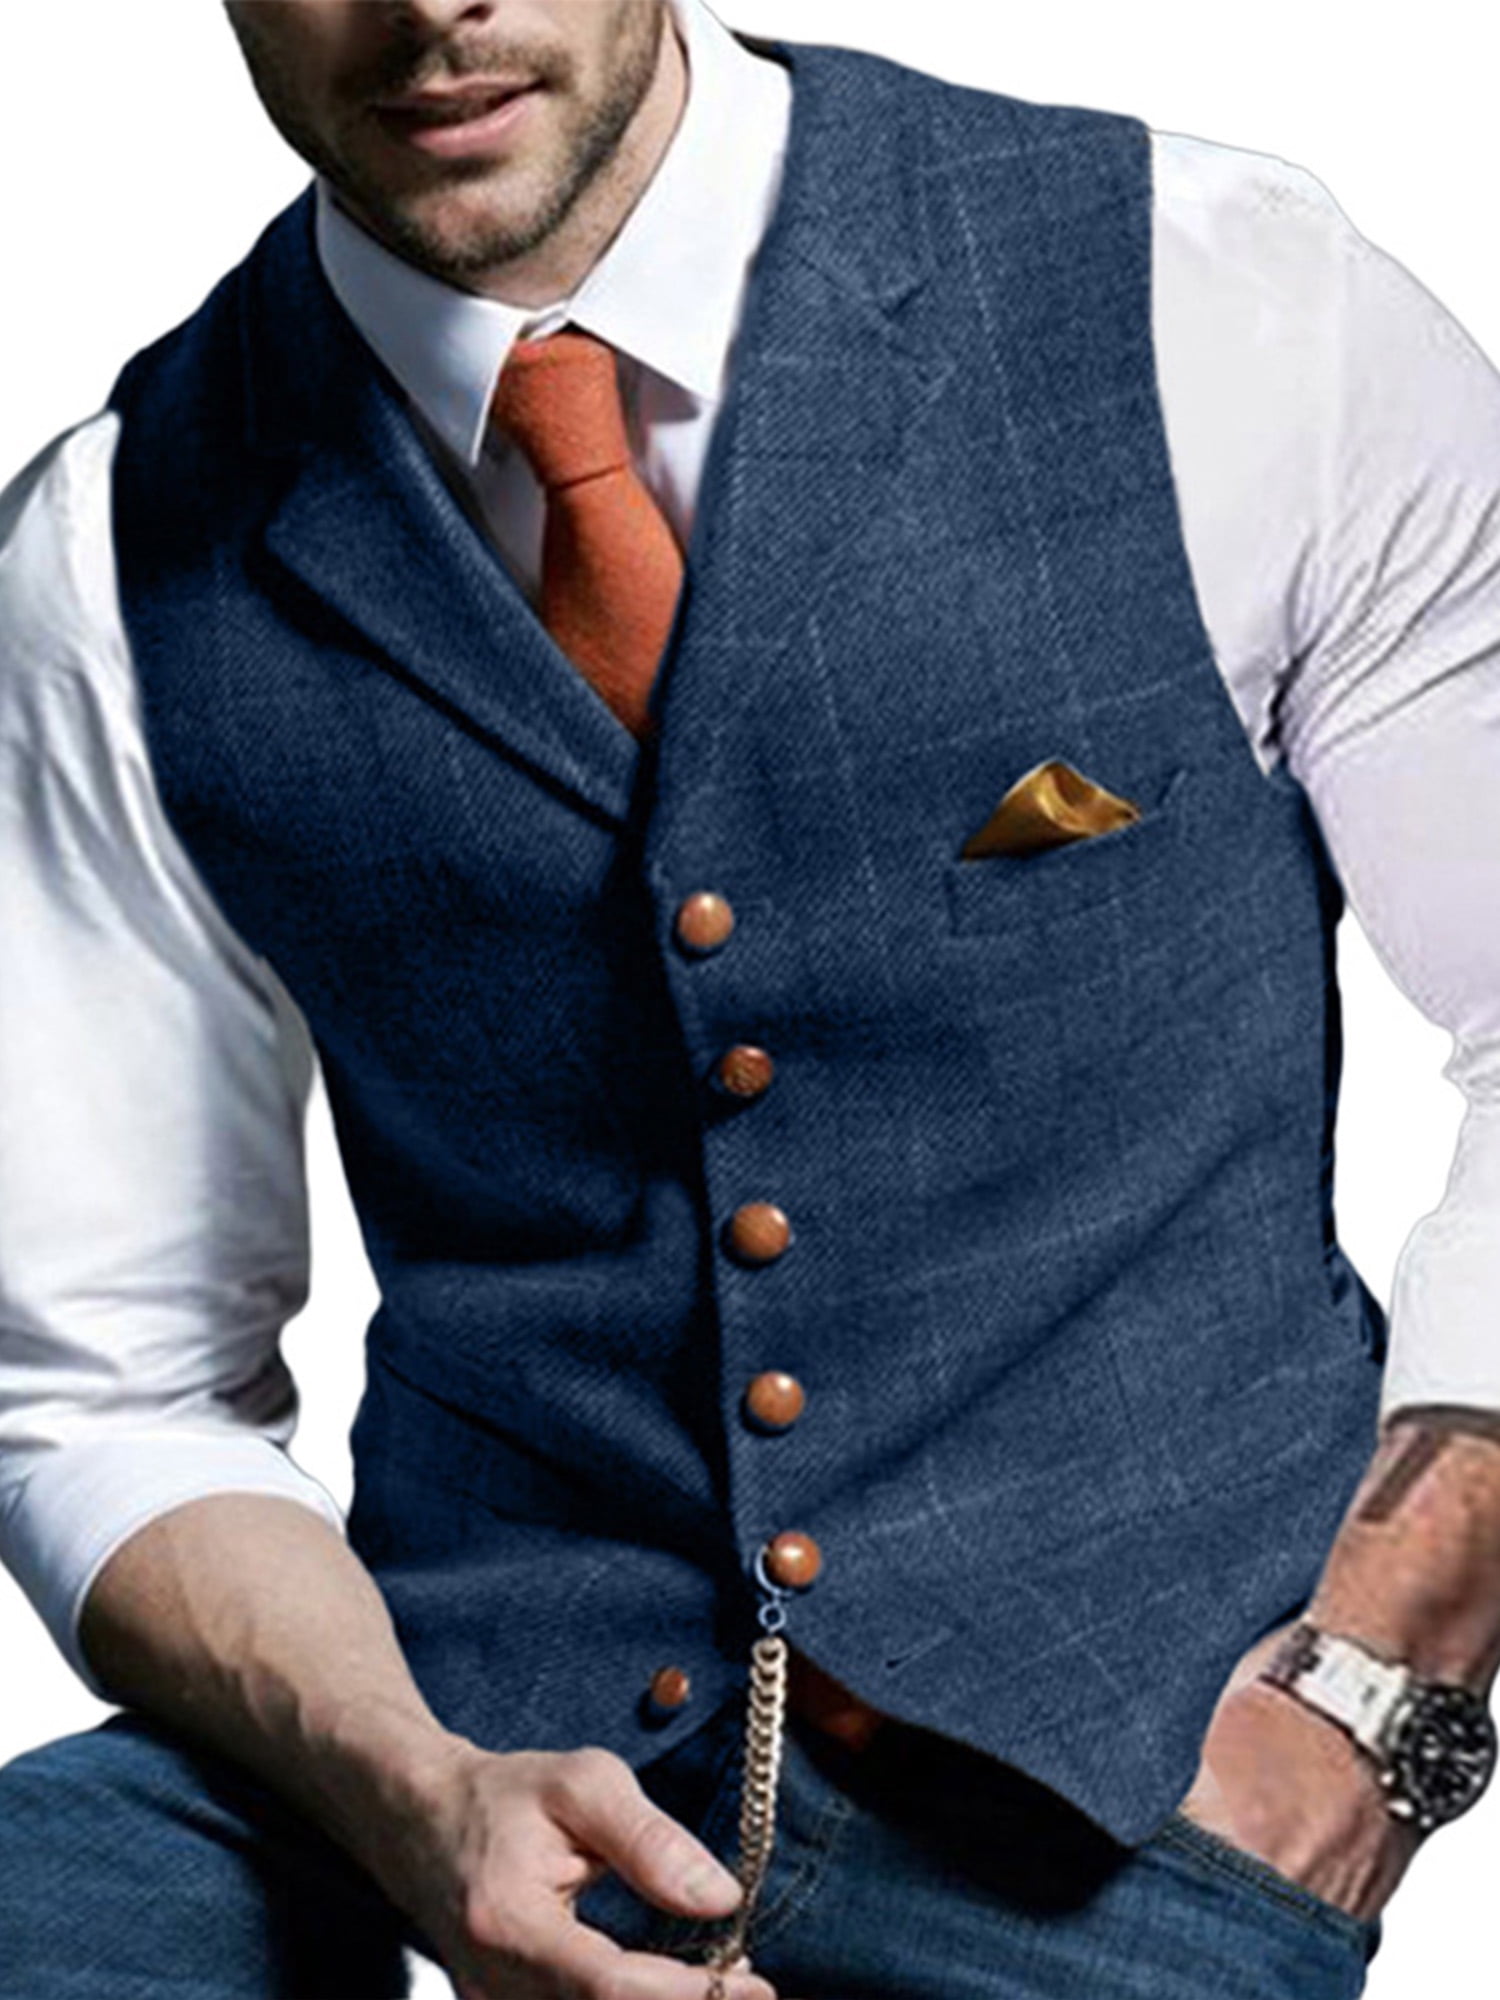 HISDERN Mens Suit Vest Herringbone Tweed Premium Wool Business Formal Slim Fit Dress Vests for Suit or Tuxedo Wedding 